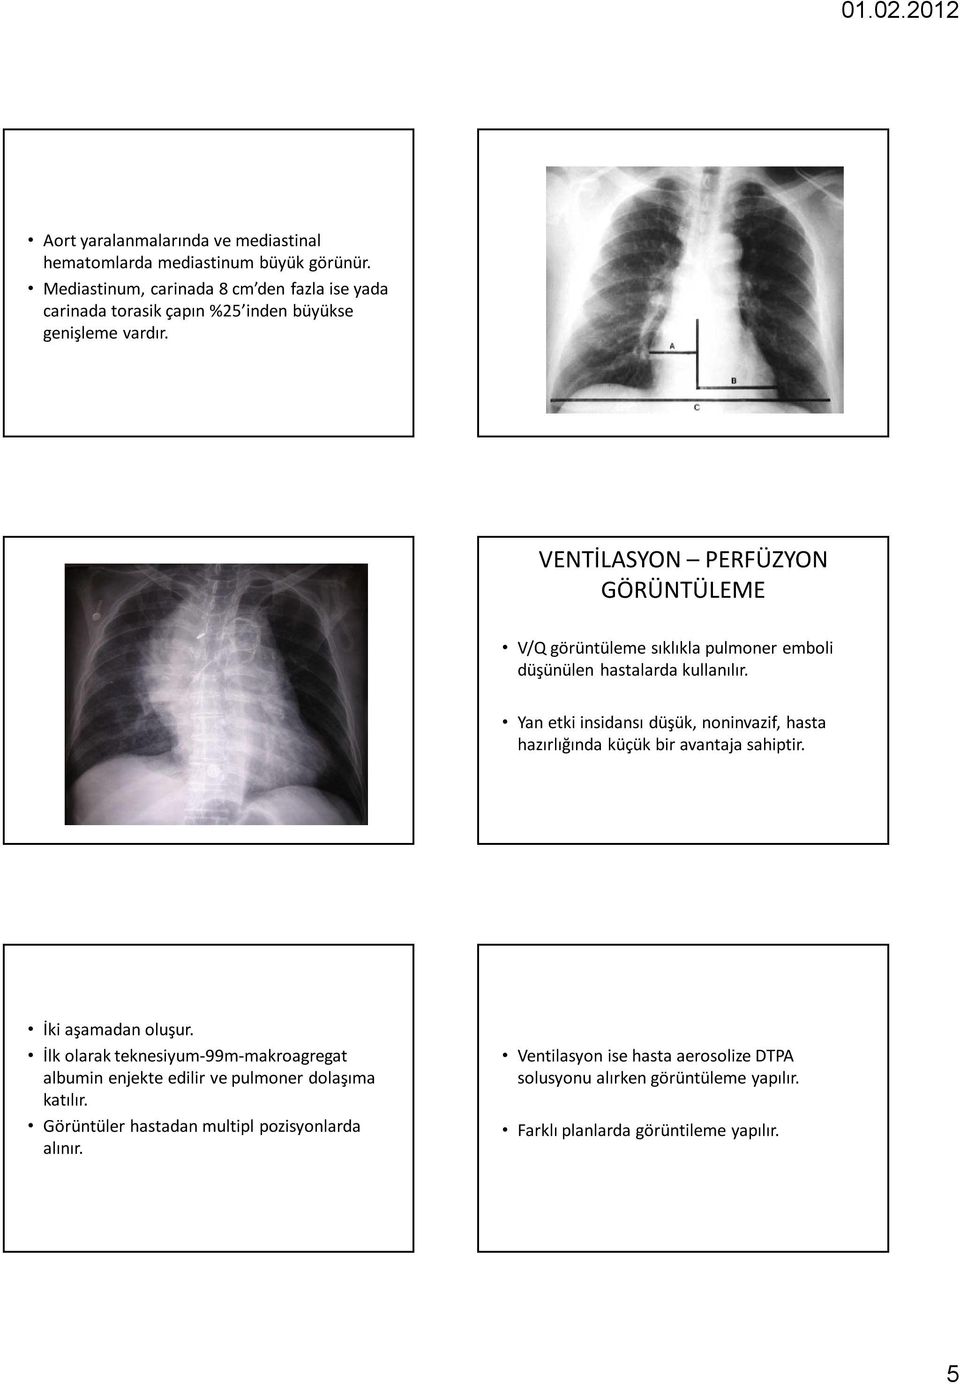 25 26 VENTİLASYON PERFÜZYON GÖRÜNTÜLEME V/Q görüntüleme sıklıkla pulmoner emboli düşünülen hastalarda kullanılır.